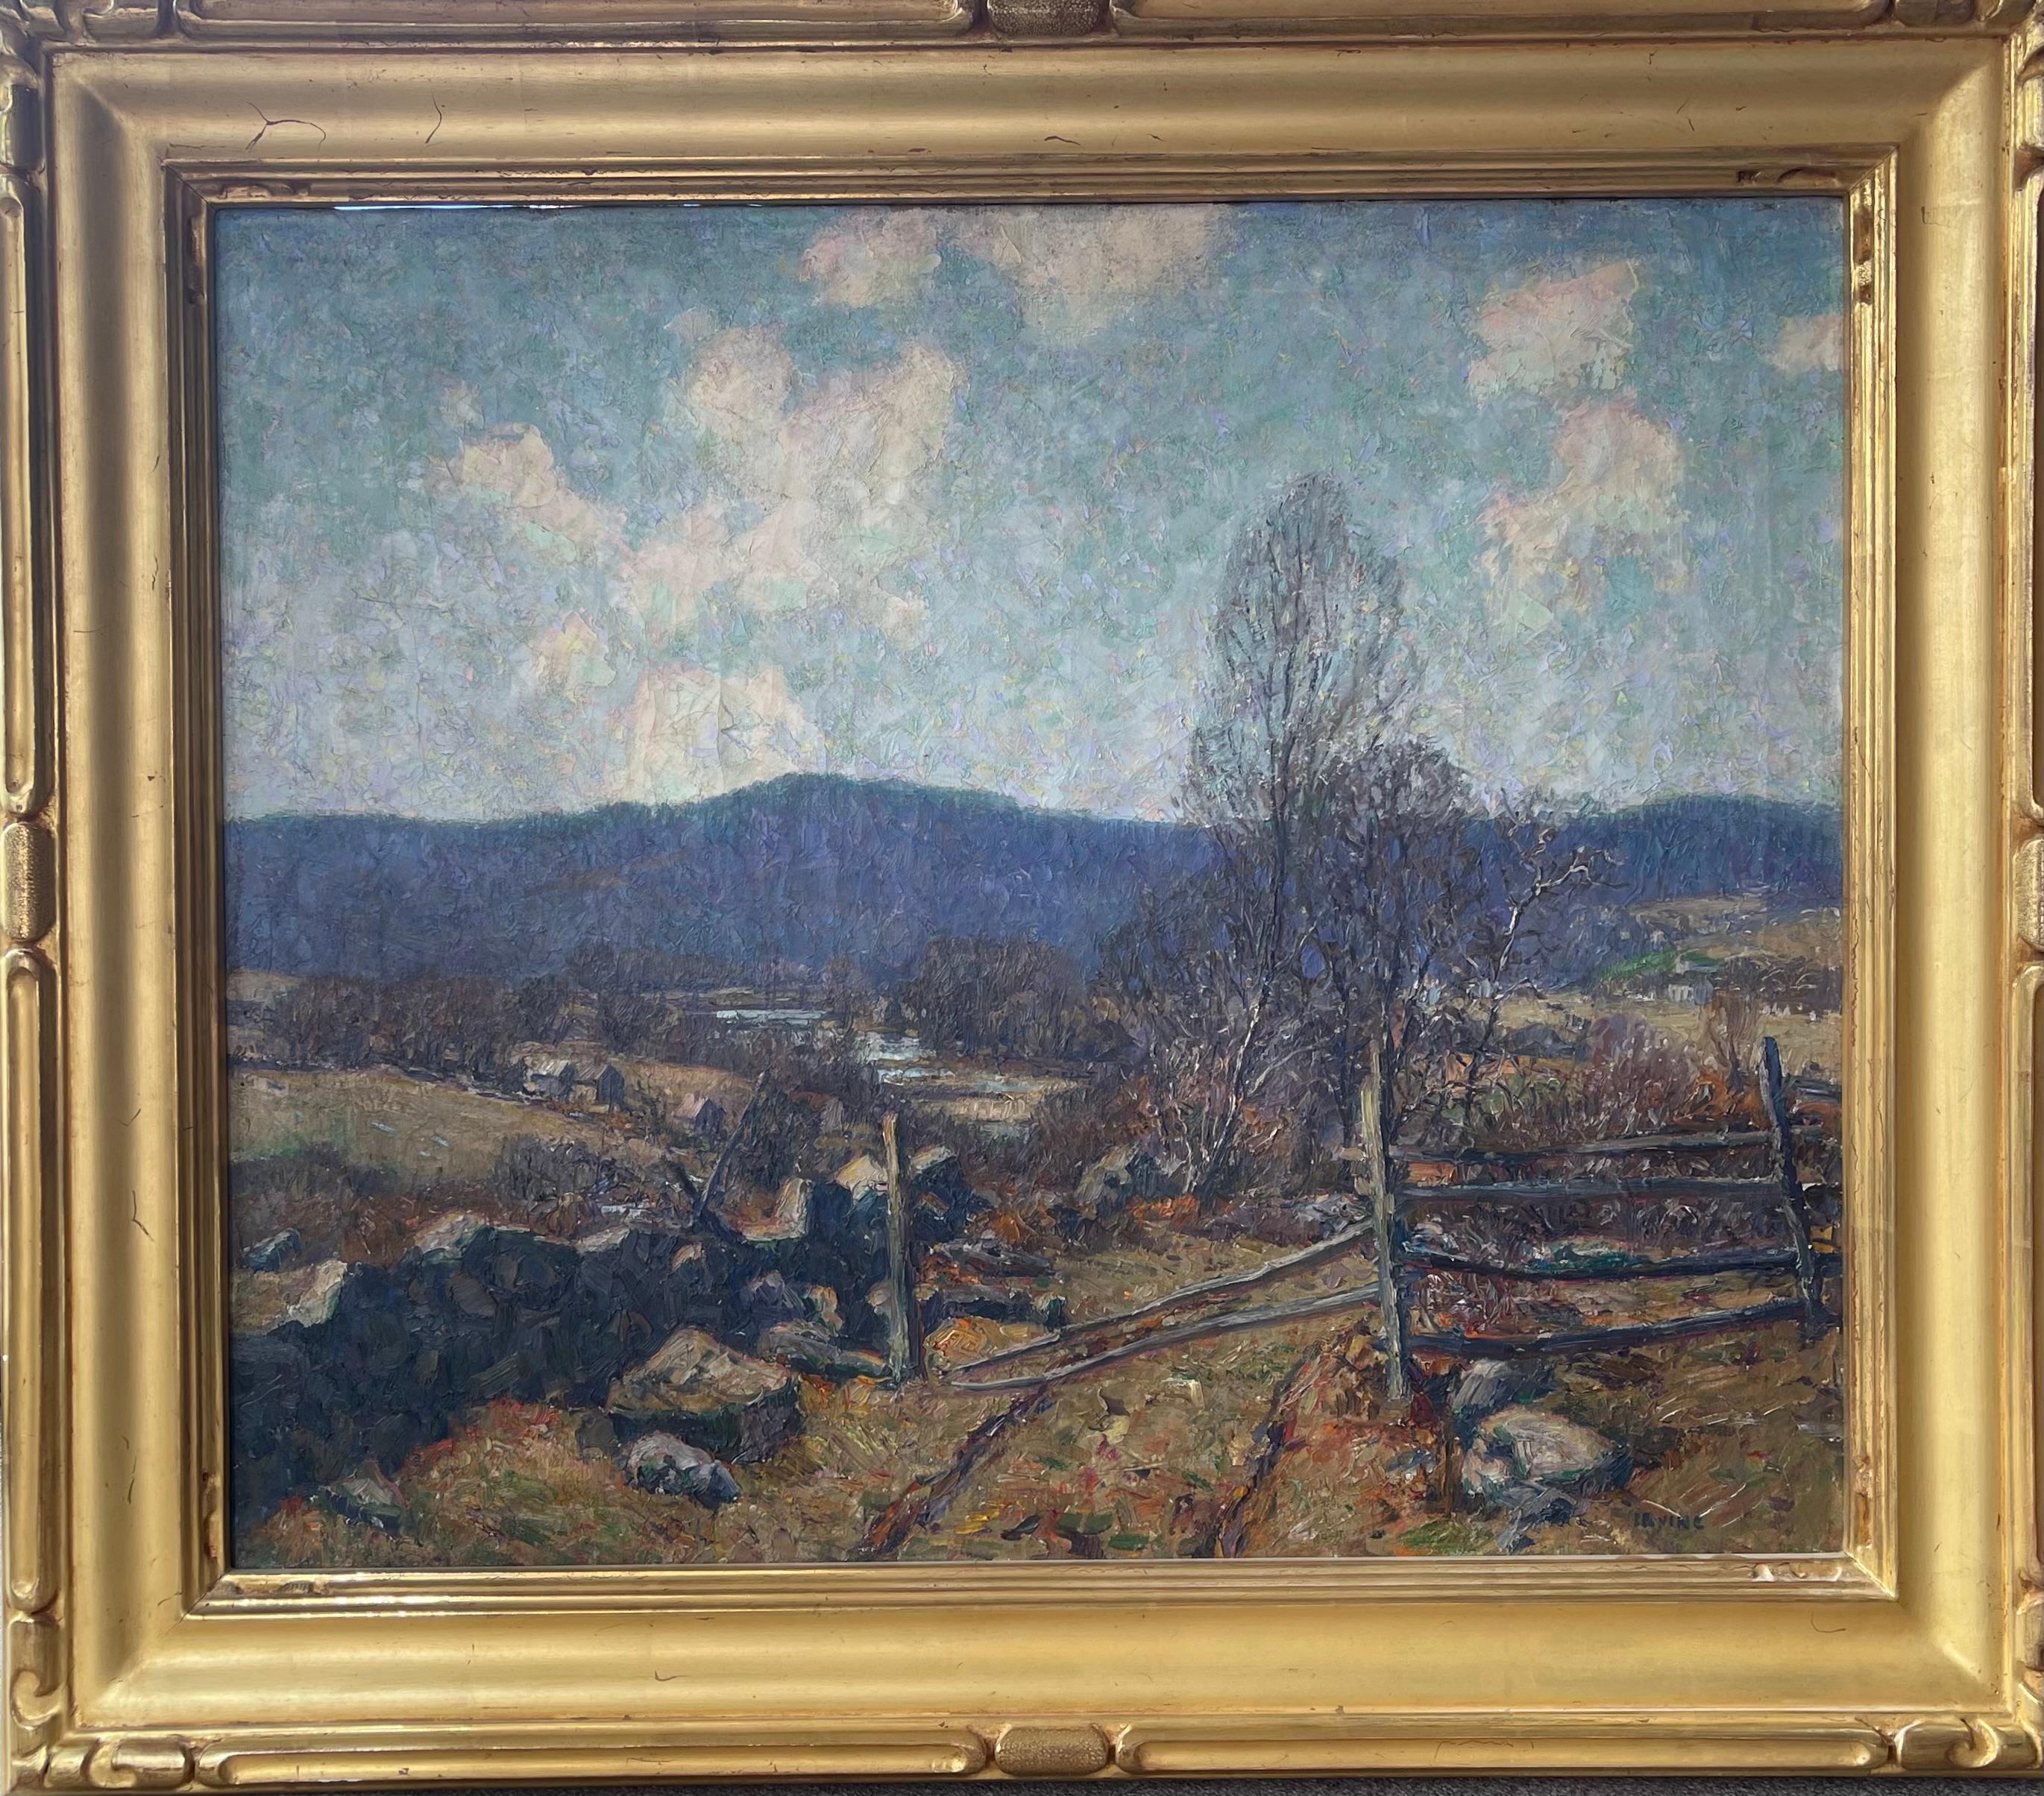  Peinture à l'huile impressionniste américaine Wilson Irvine 1869-1936 Autumn Field - Painting de Wilson Henry Irvine